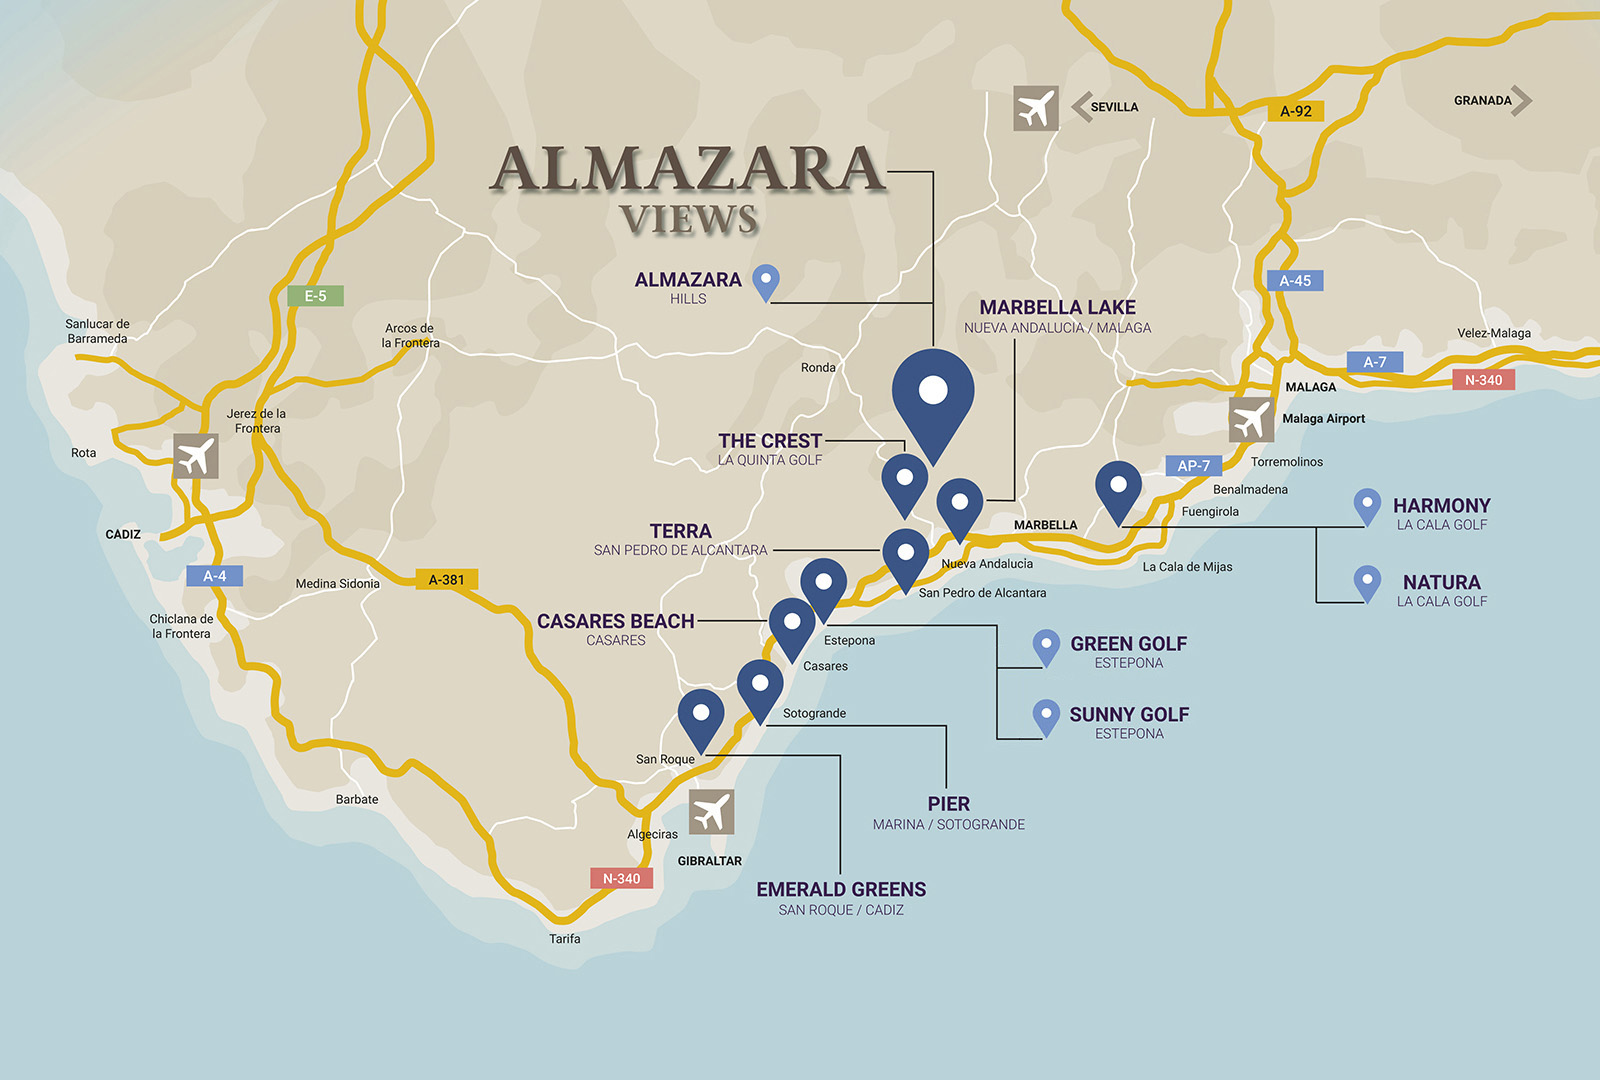 Mapa ALMAZARA VIEWS movil eng